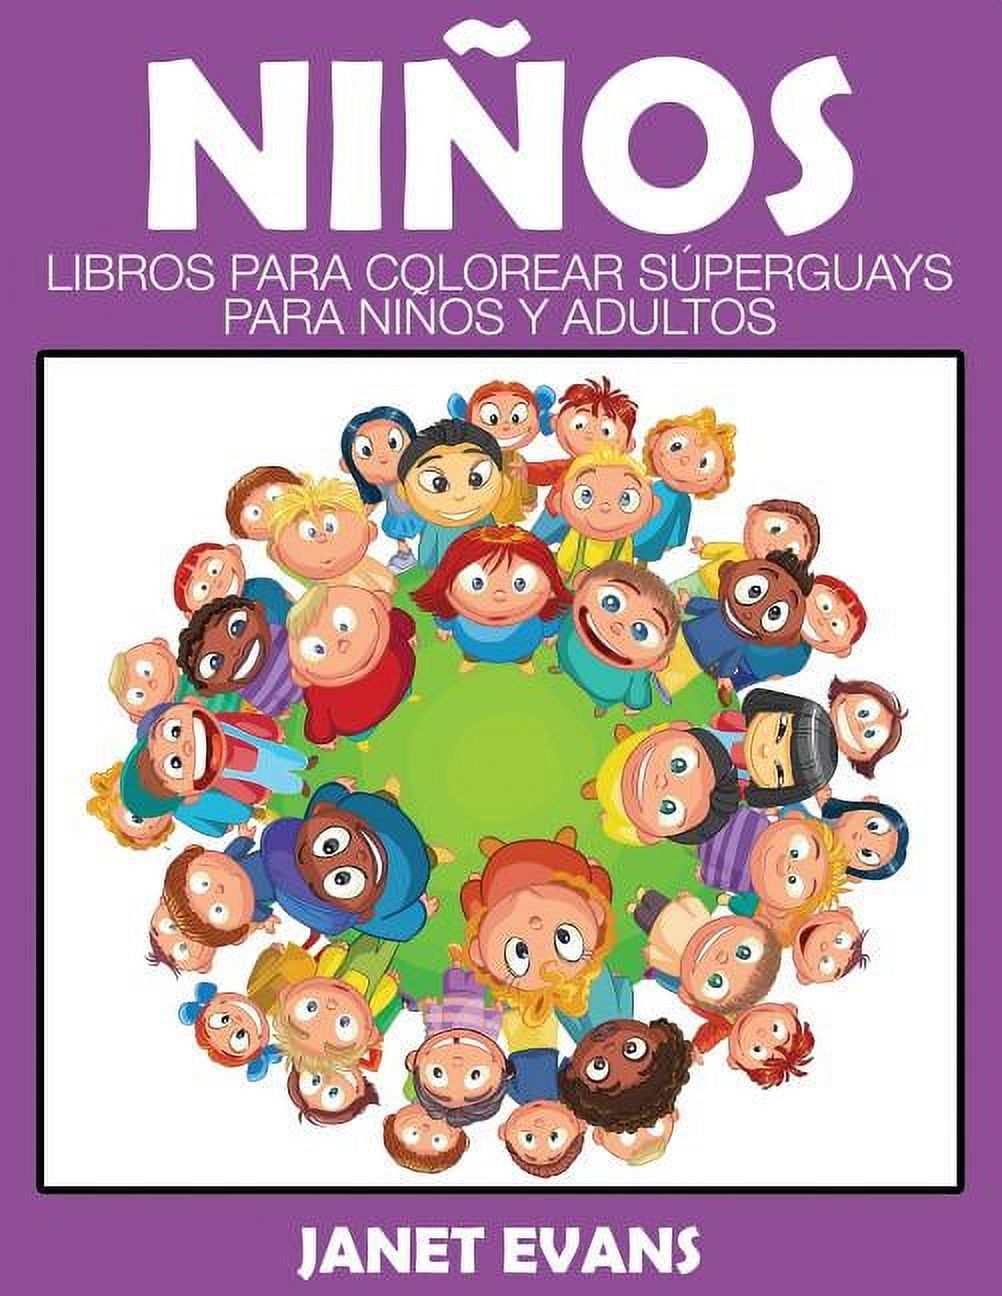 Ninos: Libros Para Colorear Superguays Para Ninos y Adultos